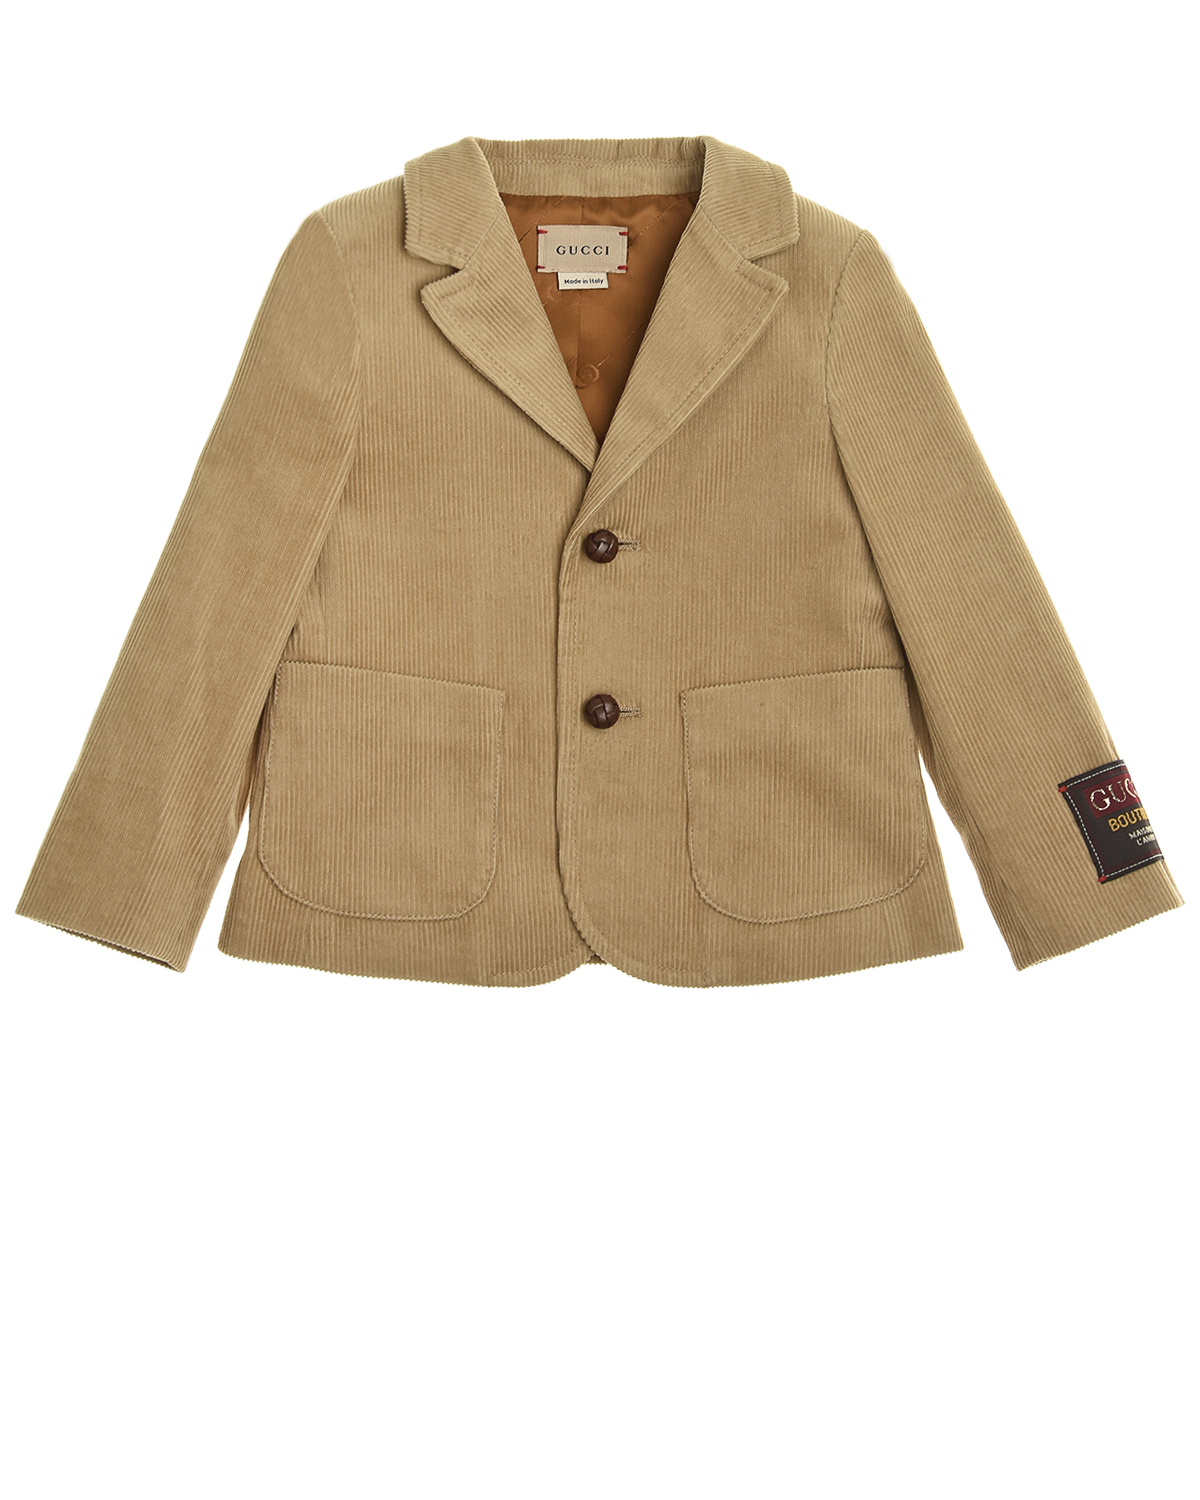 Однобортный пиджак из вельвета GUCCI детский, размер 98, цвет песочный - фото 1